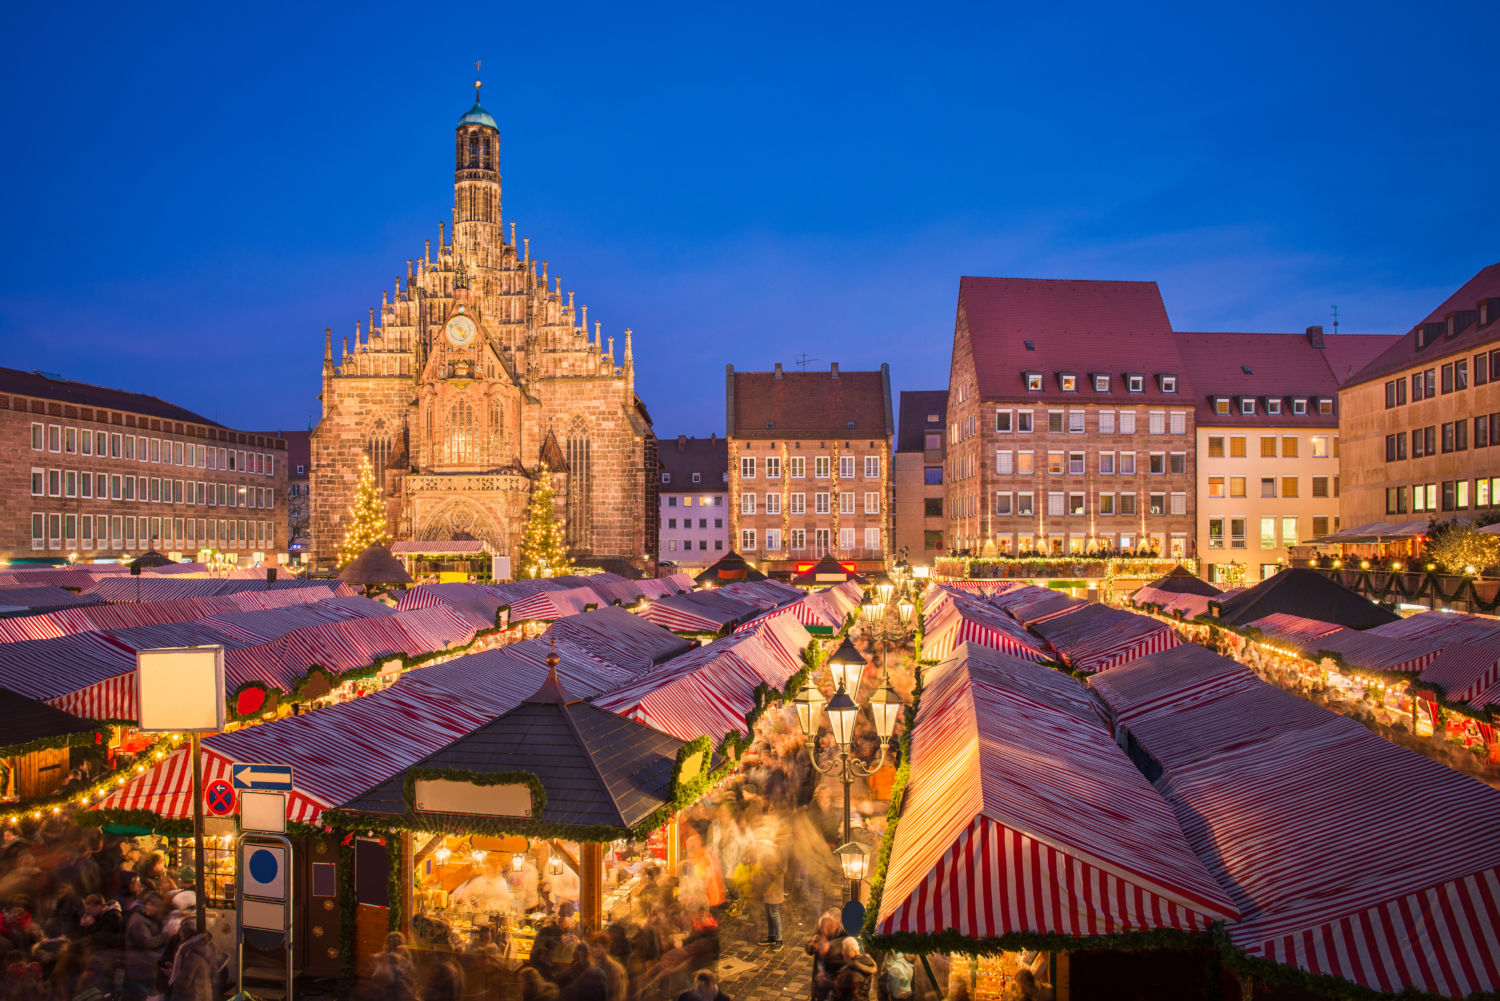 Weihnachtsmarkt Nürnberg